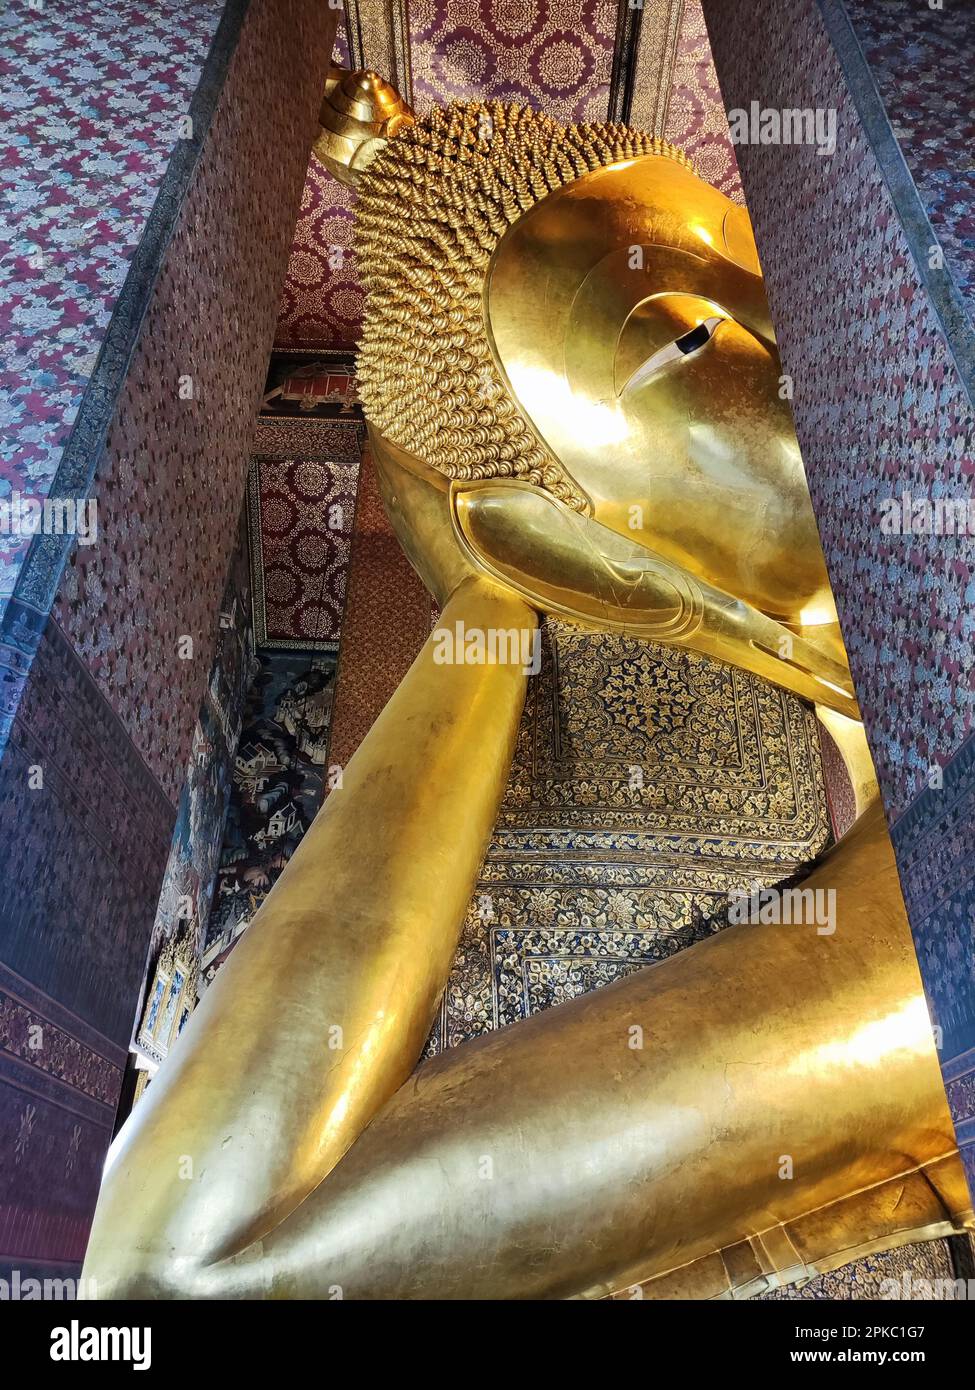 Gigantische liegende Buddha-Statue in Wat Pho, Bangkok. Wat Pho ist die älteste und größte Tempelanlage in Bangkok Stockfoto